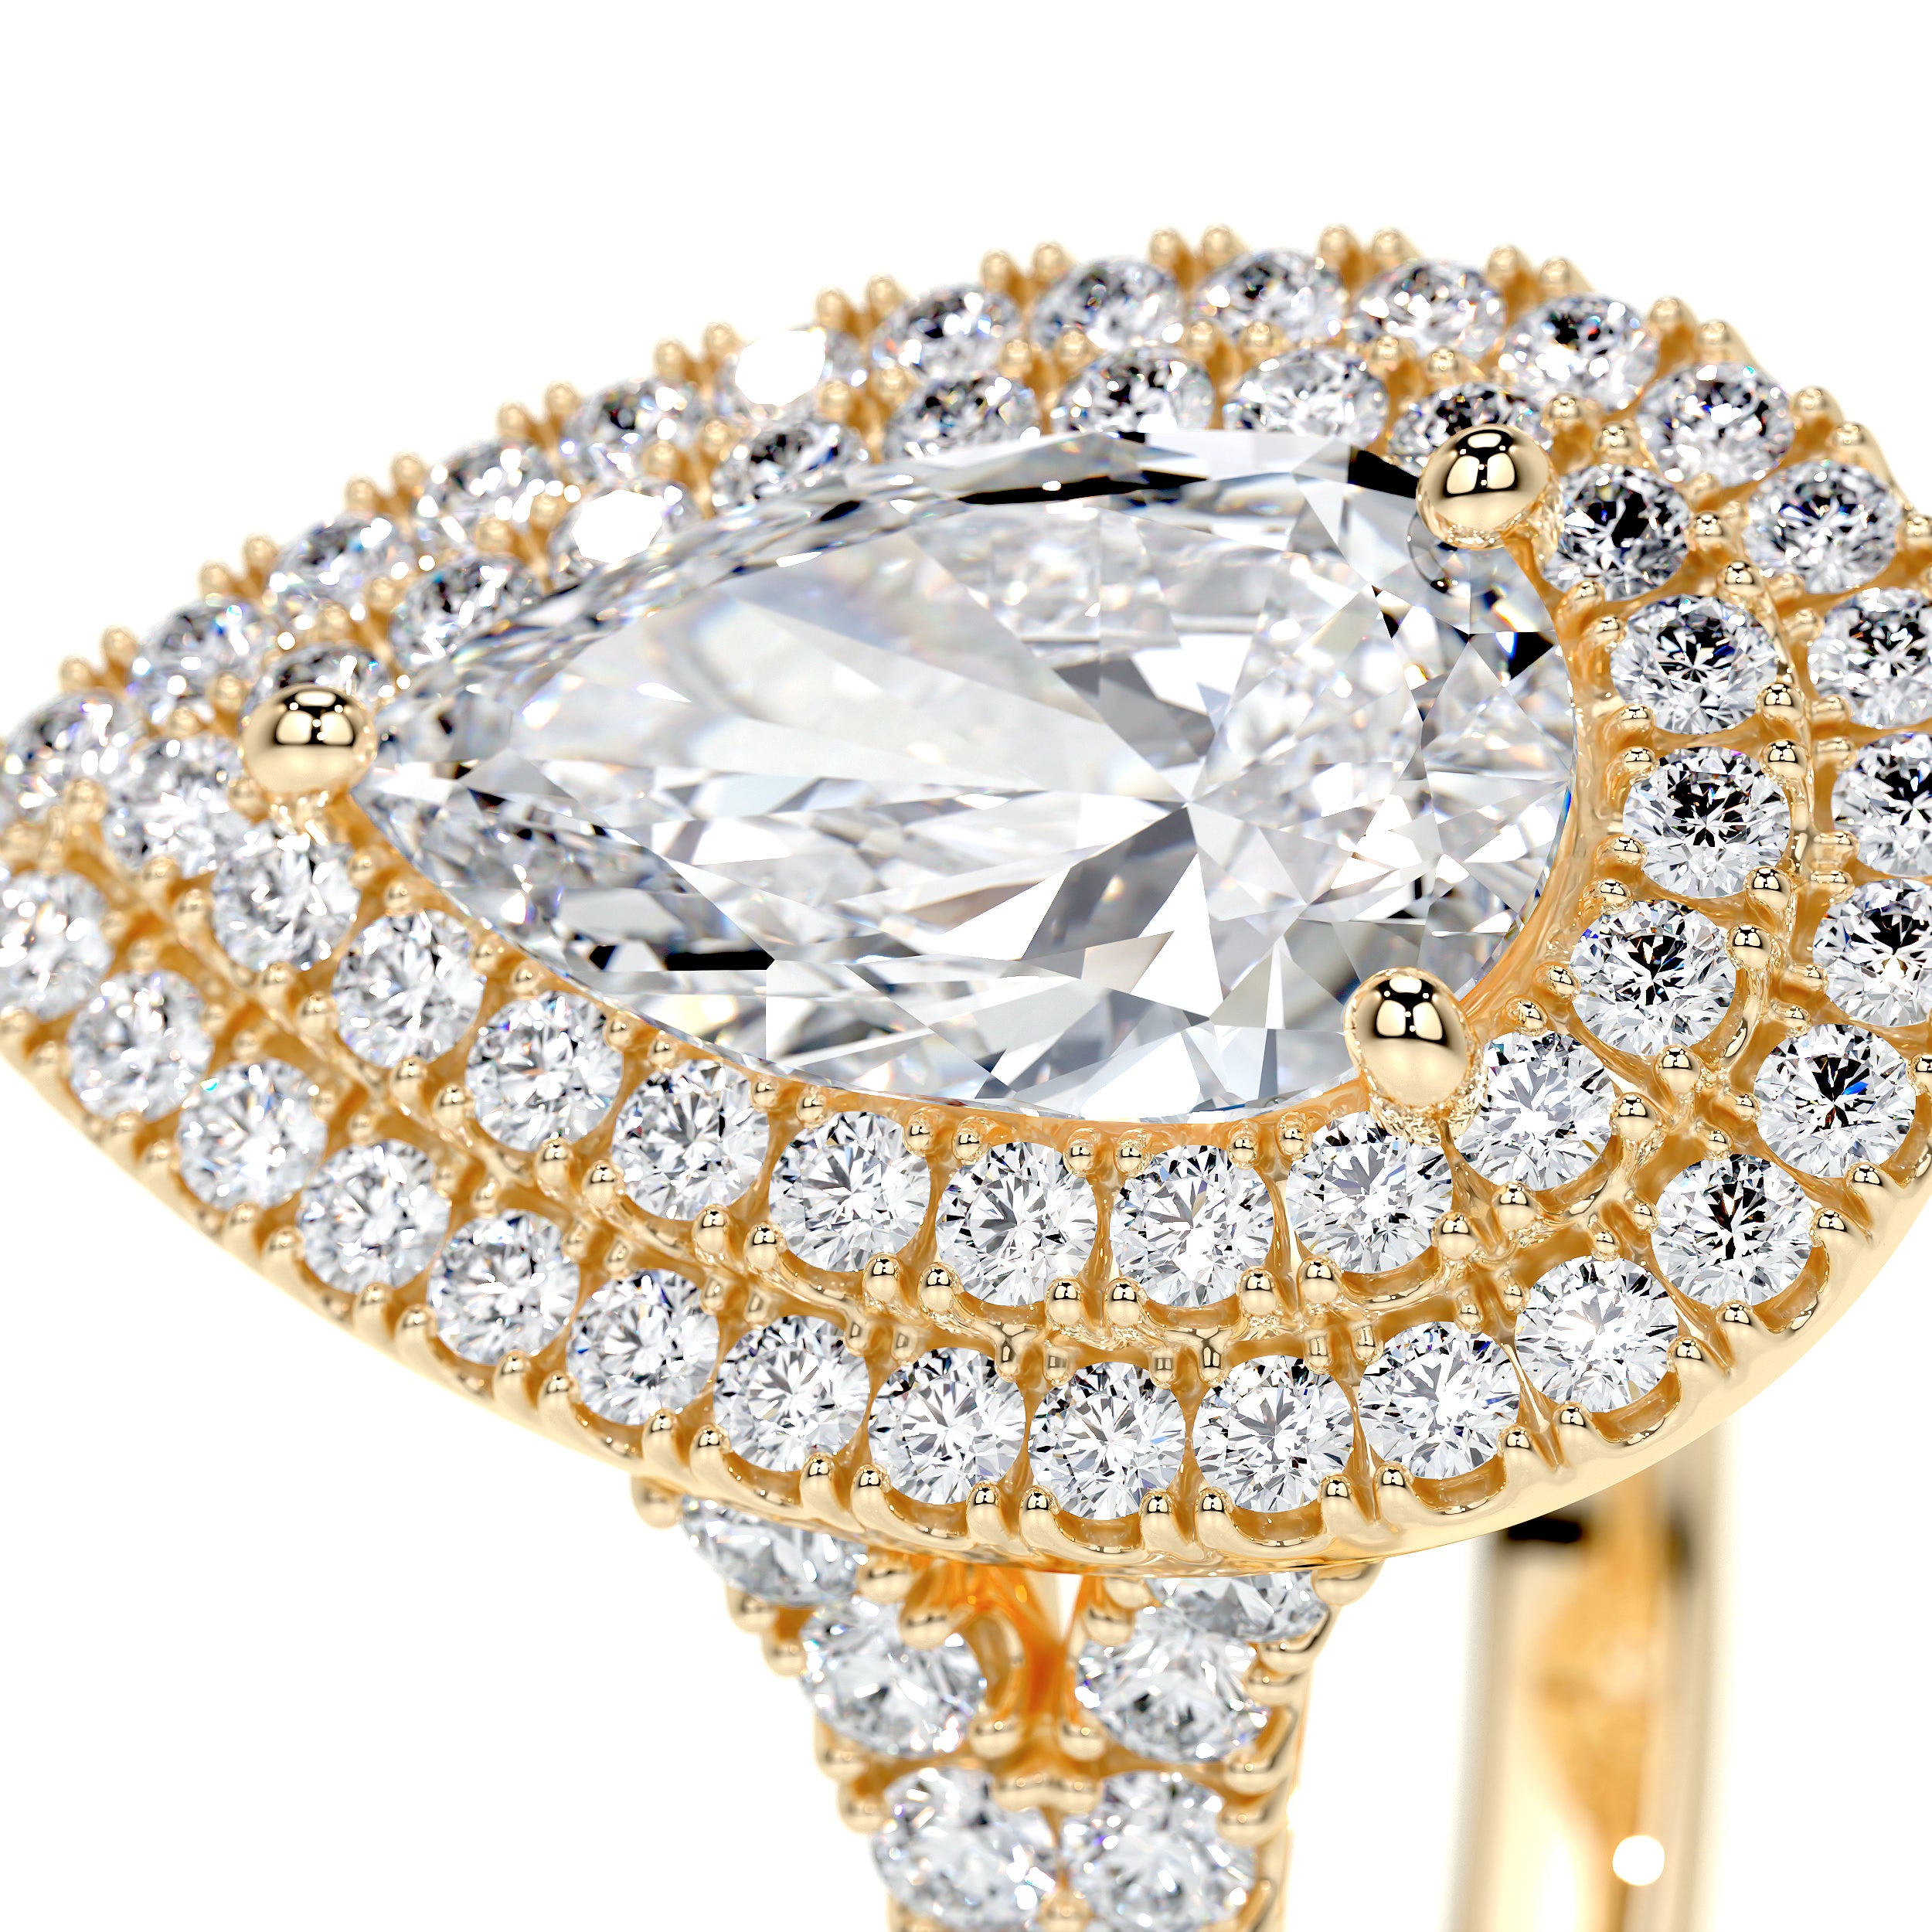 Melanie Lab Grown Diamond Ring   (1.75 Carat) -18K Yellow Gold